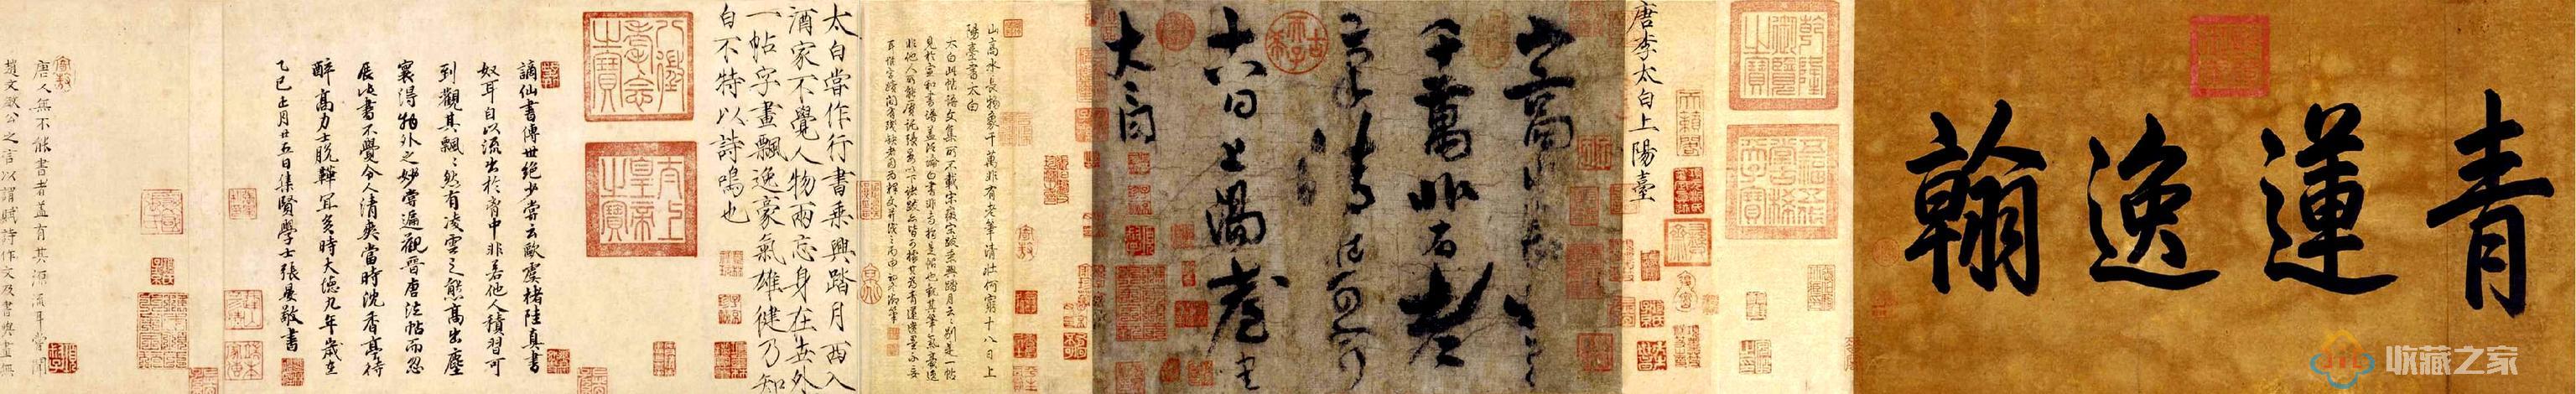 唐代李白《上阳台帖》——李白唯一传世的书